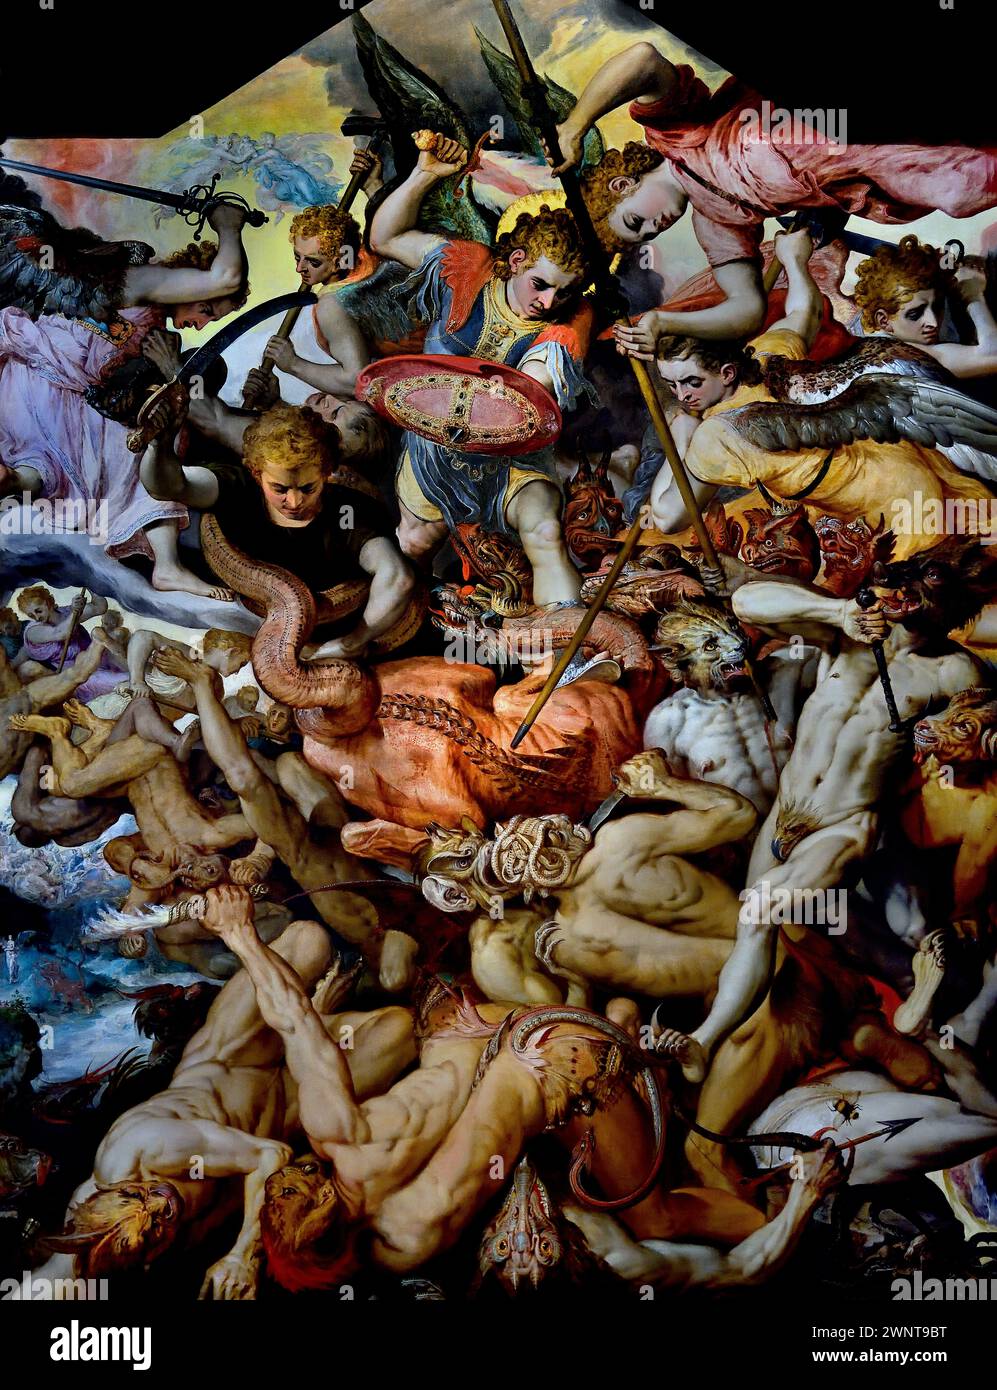 La caduta degli Angeli ribelli 1554 Frans Floris i 1515-1570 Museo reale di Belle Arti, Anversa, Belgio, Belgio. (Battaglia biblica tra il bene e il male. È un fitto groviglio di braccia, gambe, ali e code. In cima, gli angeli fedeli a Dio combattono contro l'Arcangelo Michele come loro capitano. Foto Stock